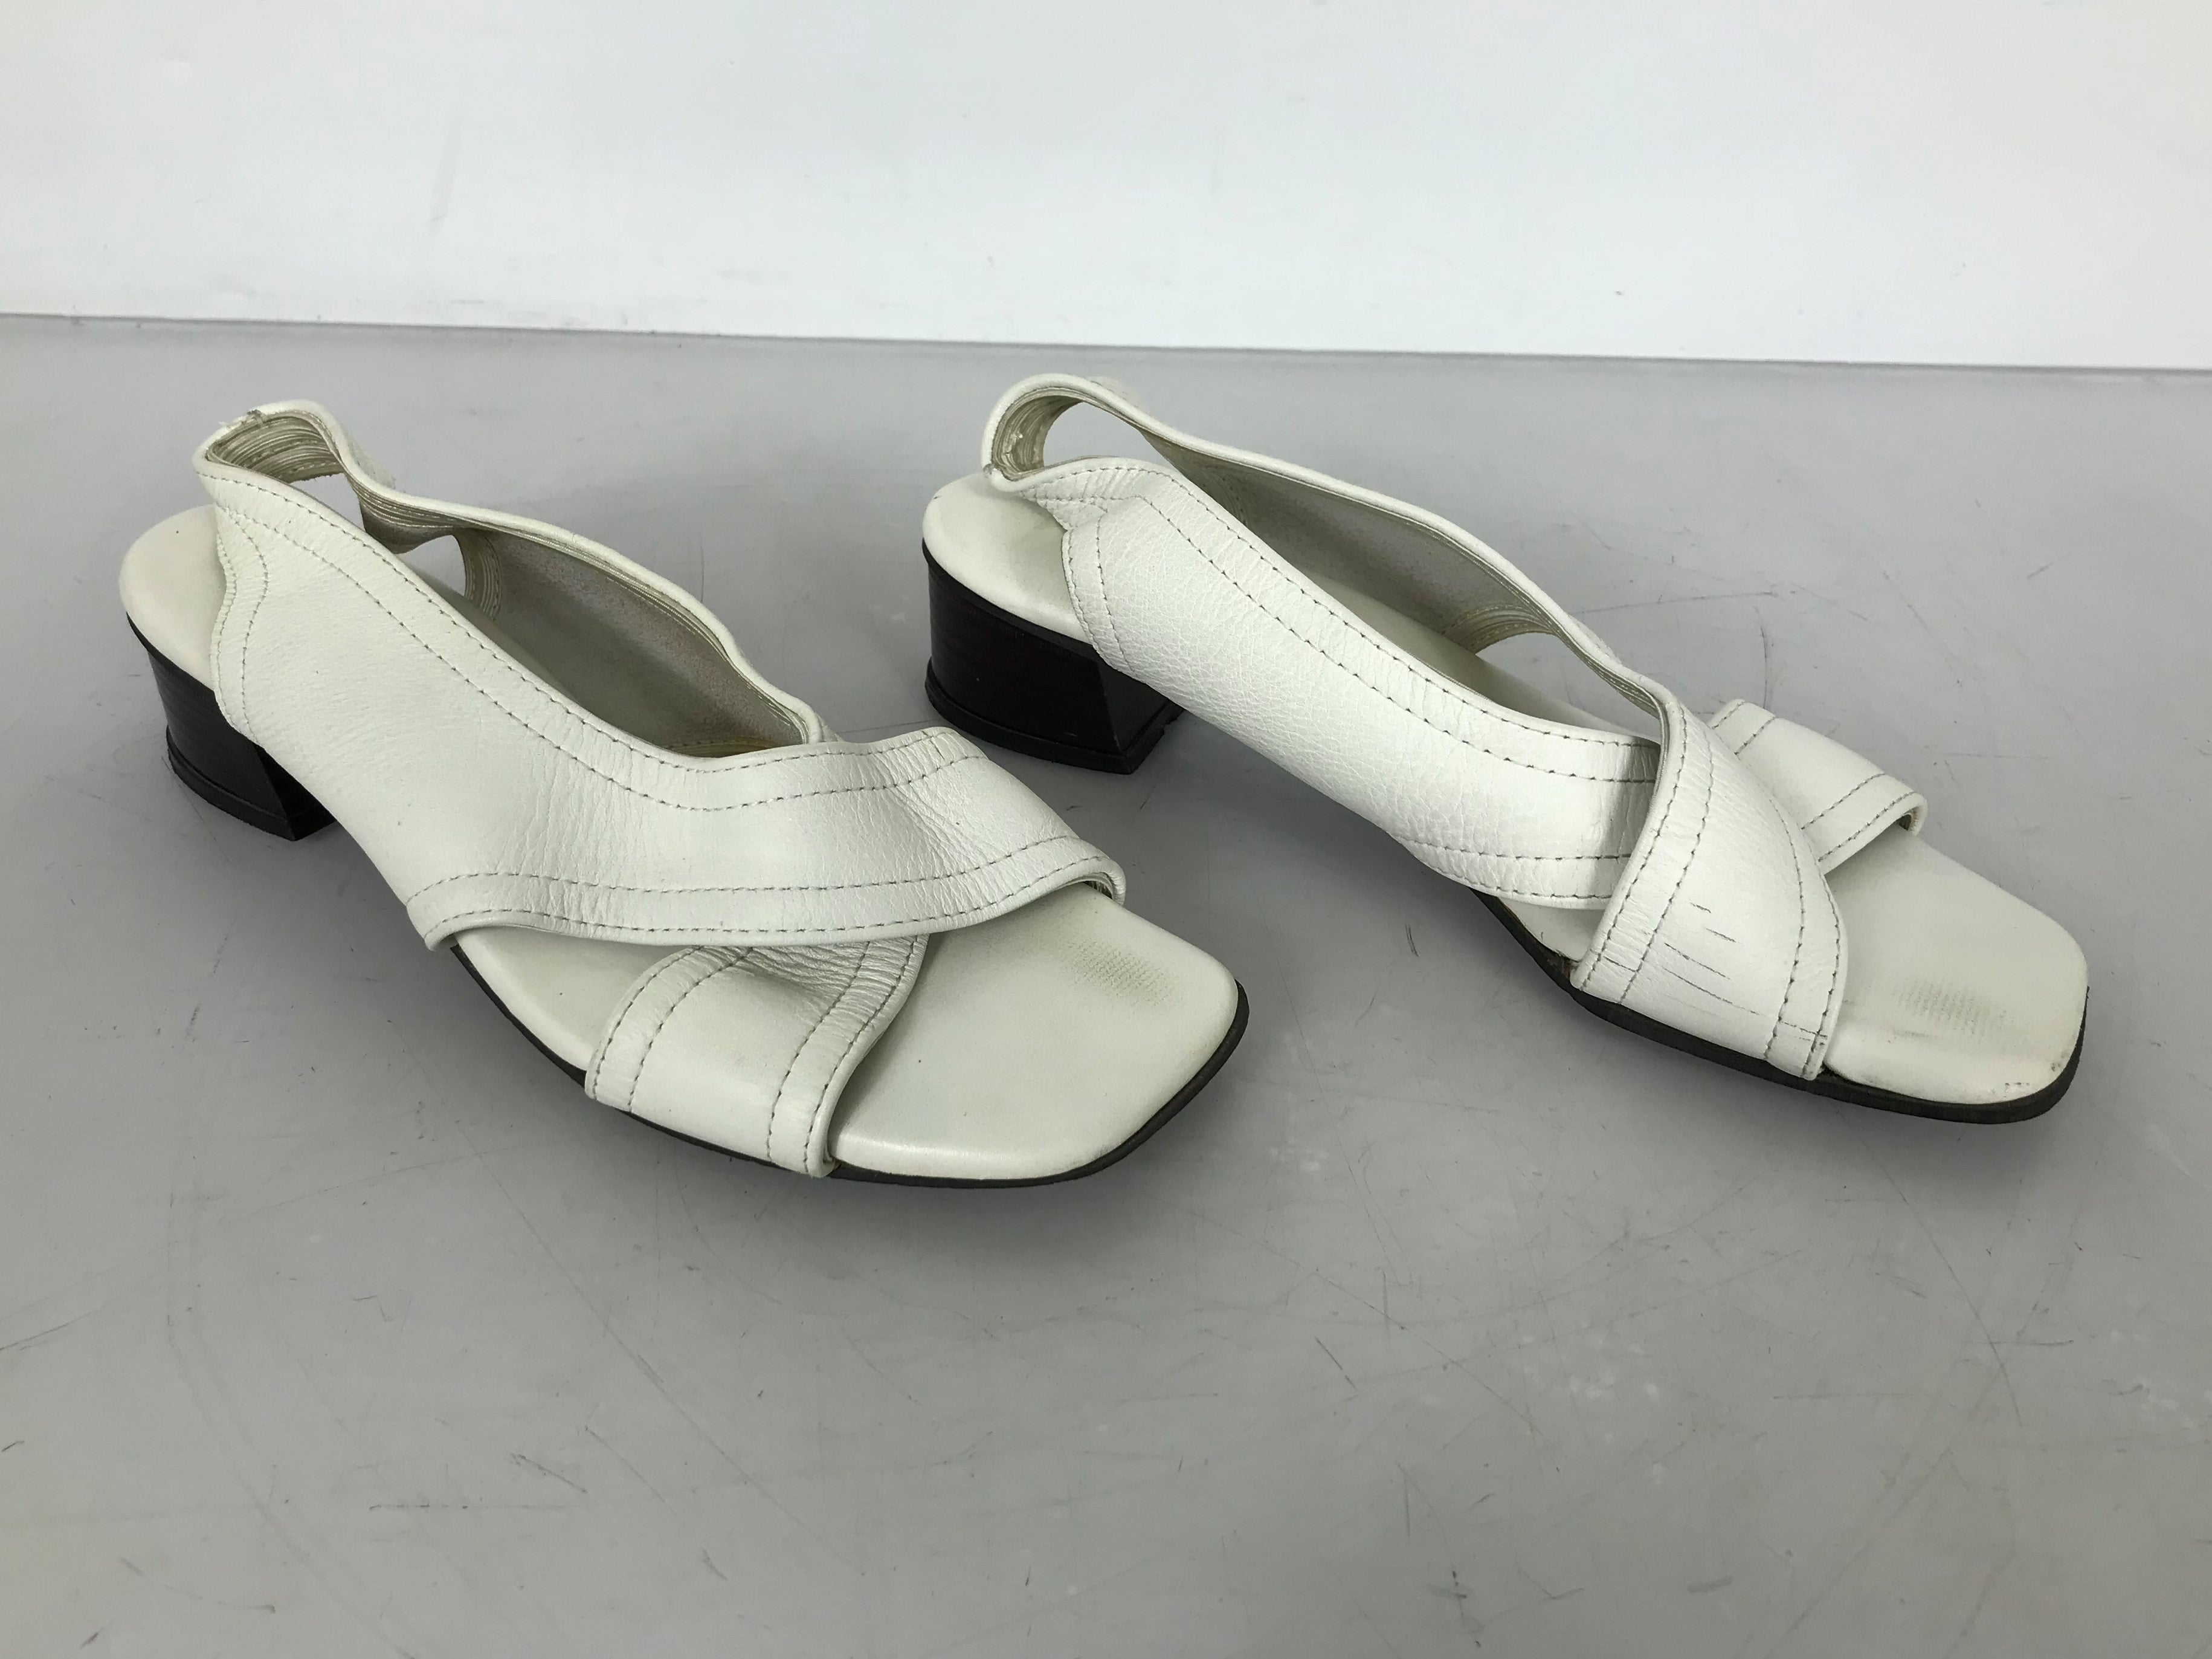 Vintage Saks Fifth Avenue Fenton Last Women's Heels Size Unknown